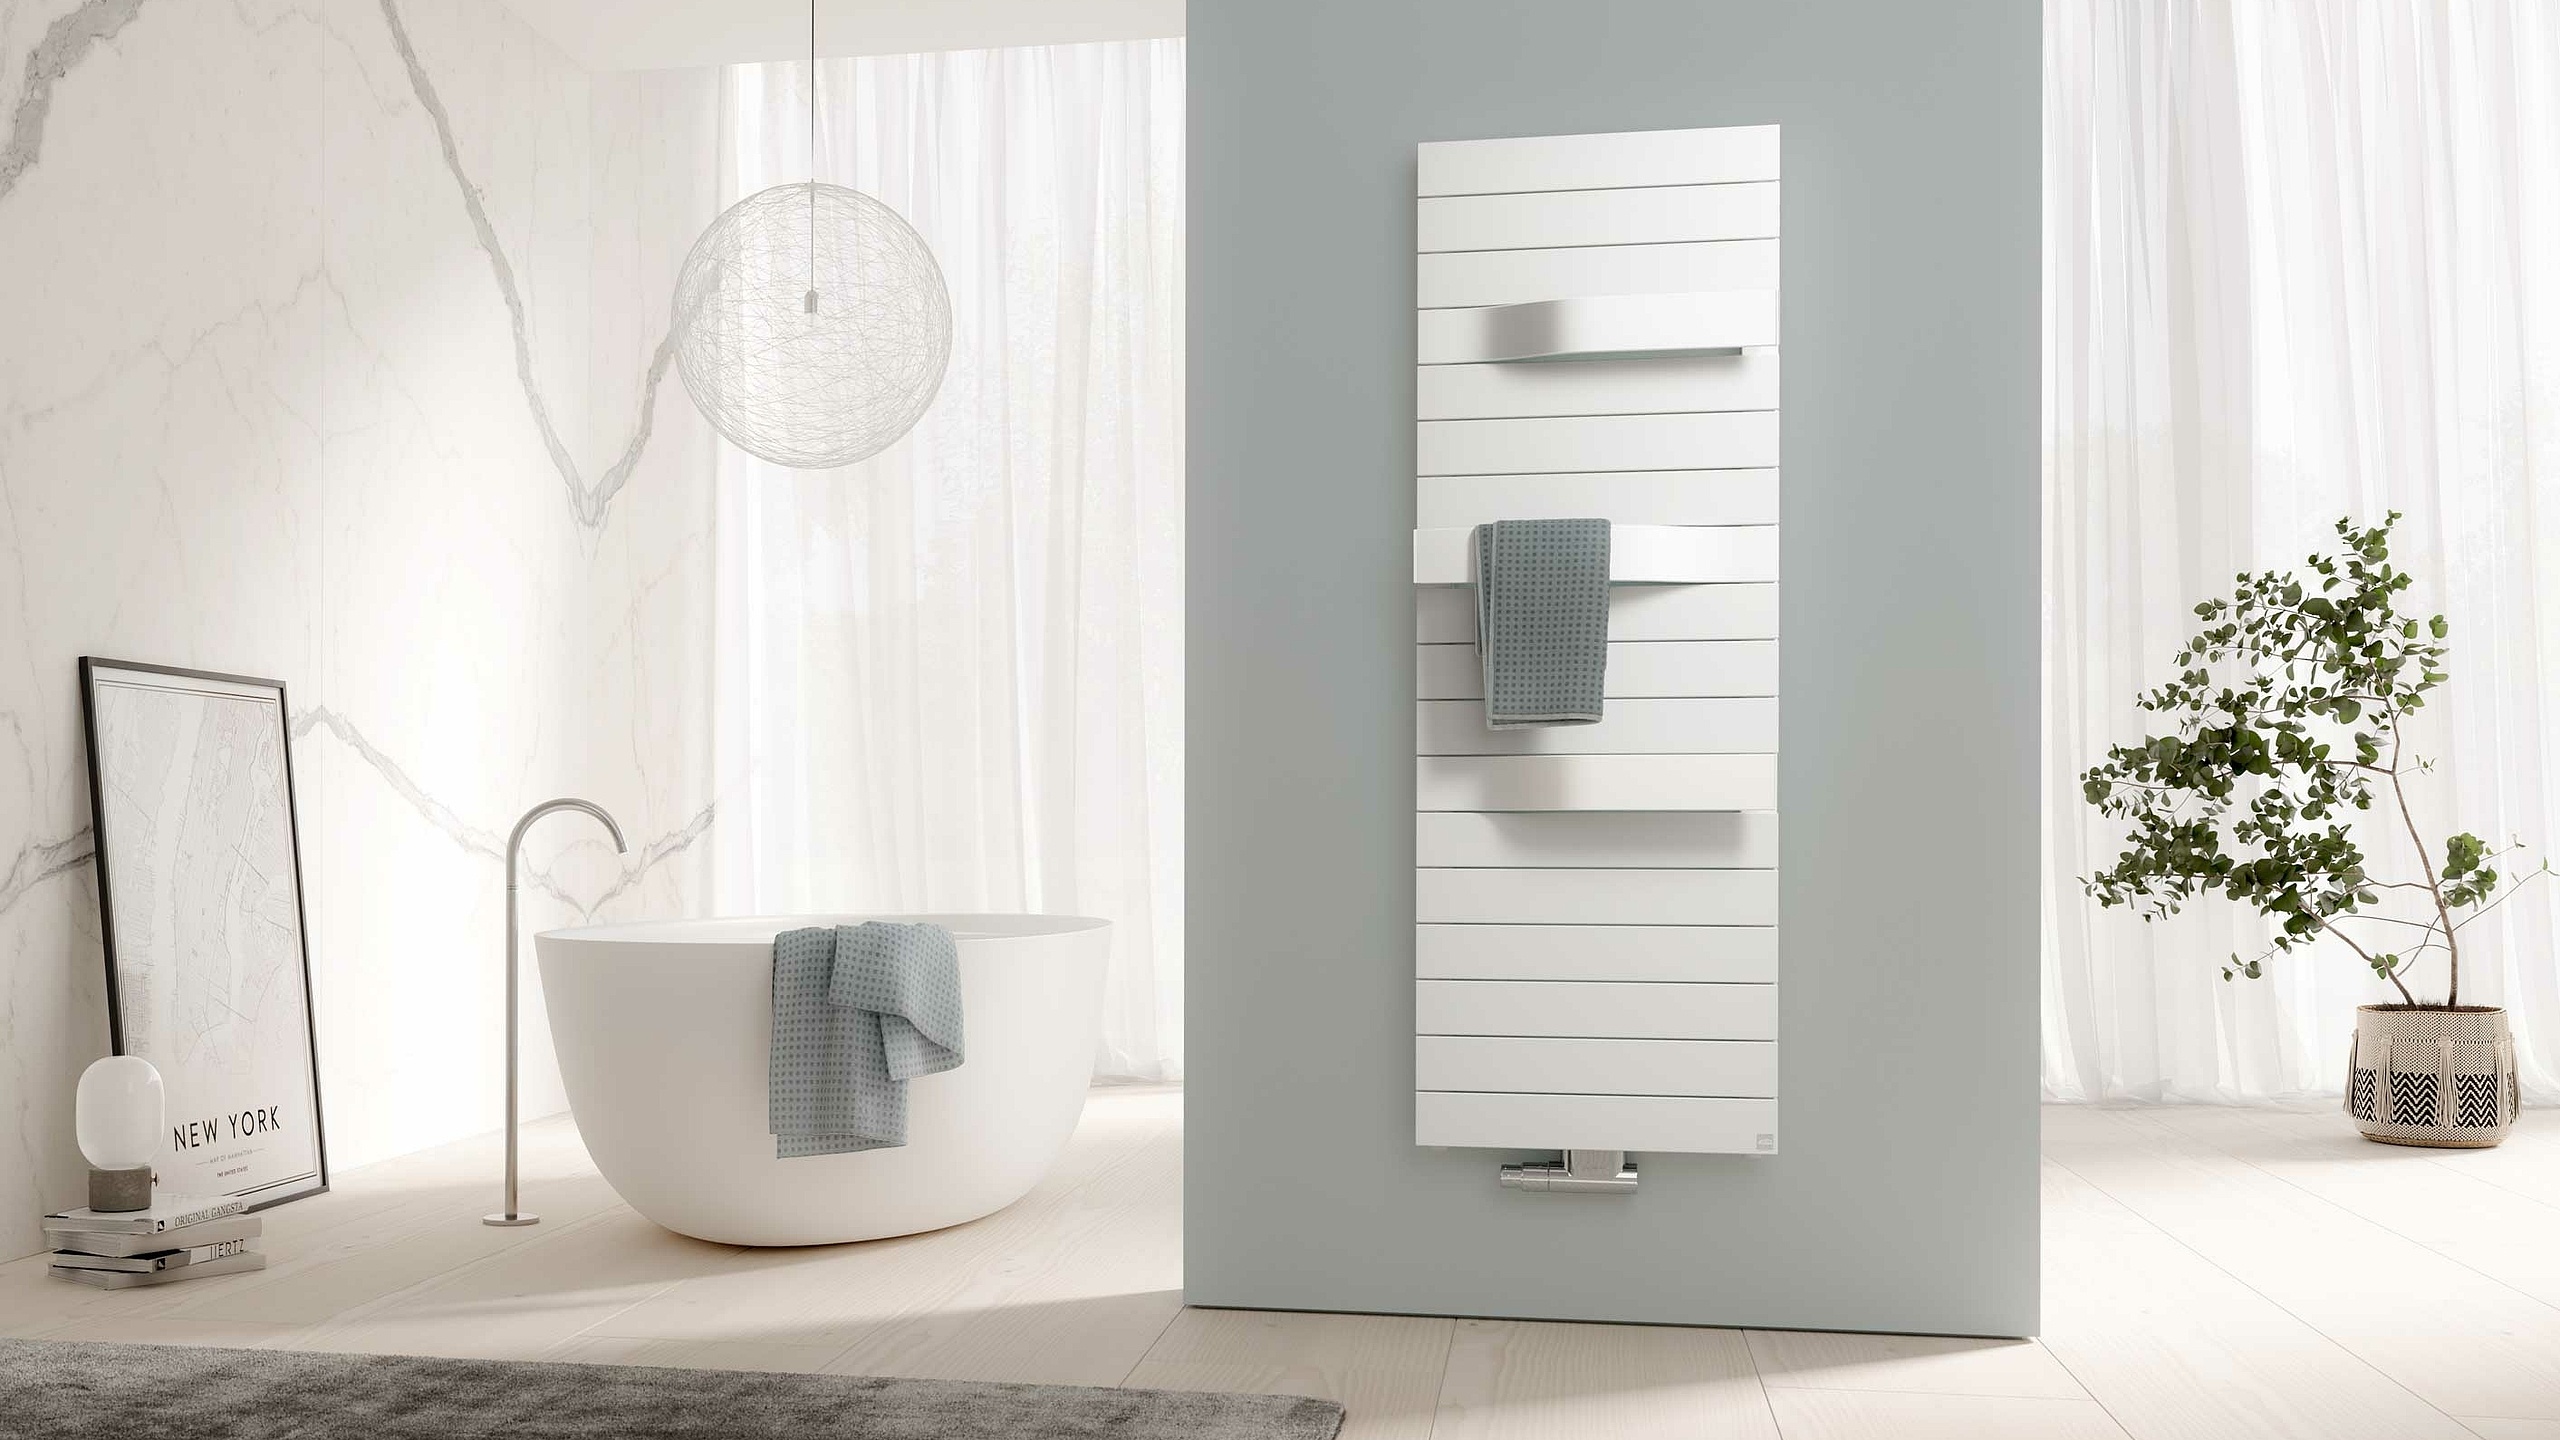 Kermi Tabeo dizaino radiatoriai - rankšluosčių džiovintuvai – grožio ir komforto viename.